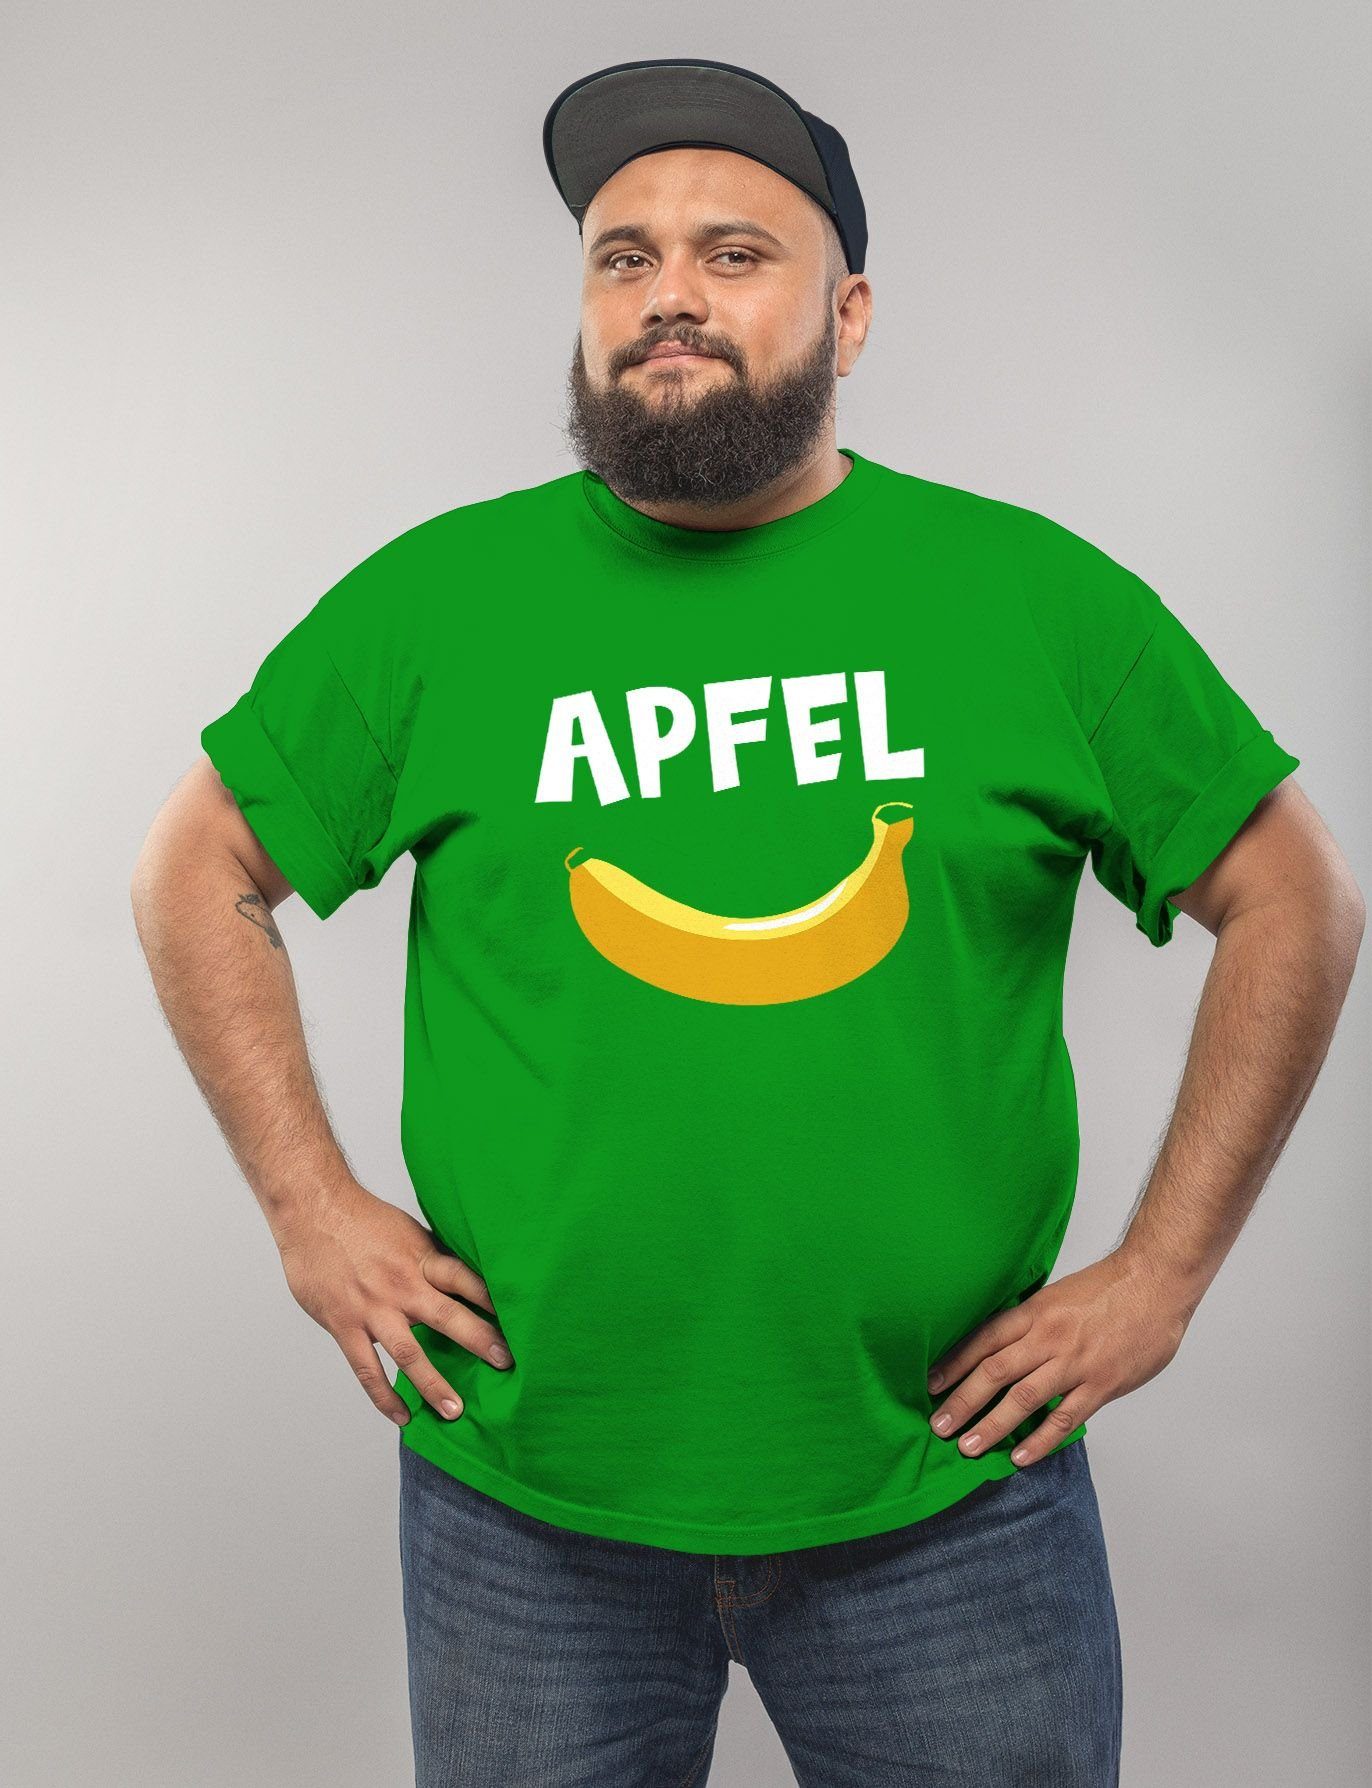 MoonWorks Print-Shirt lustig Herren T-Shirt Scherz Witz grün lustiger Spruch Print Moonworks® Apfel Aufdruck mit Fun-Shirt Banane